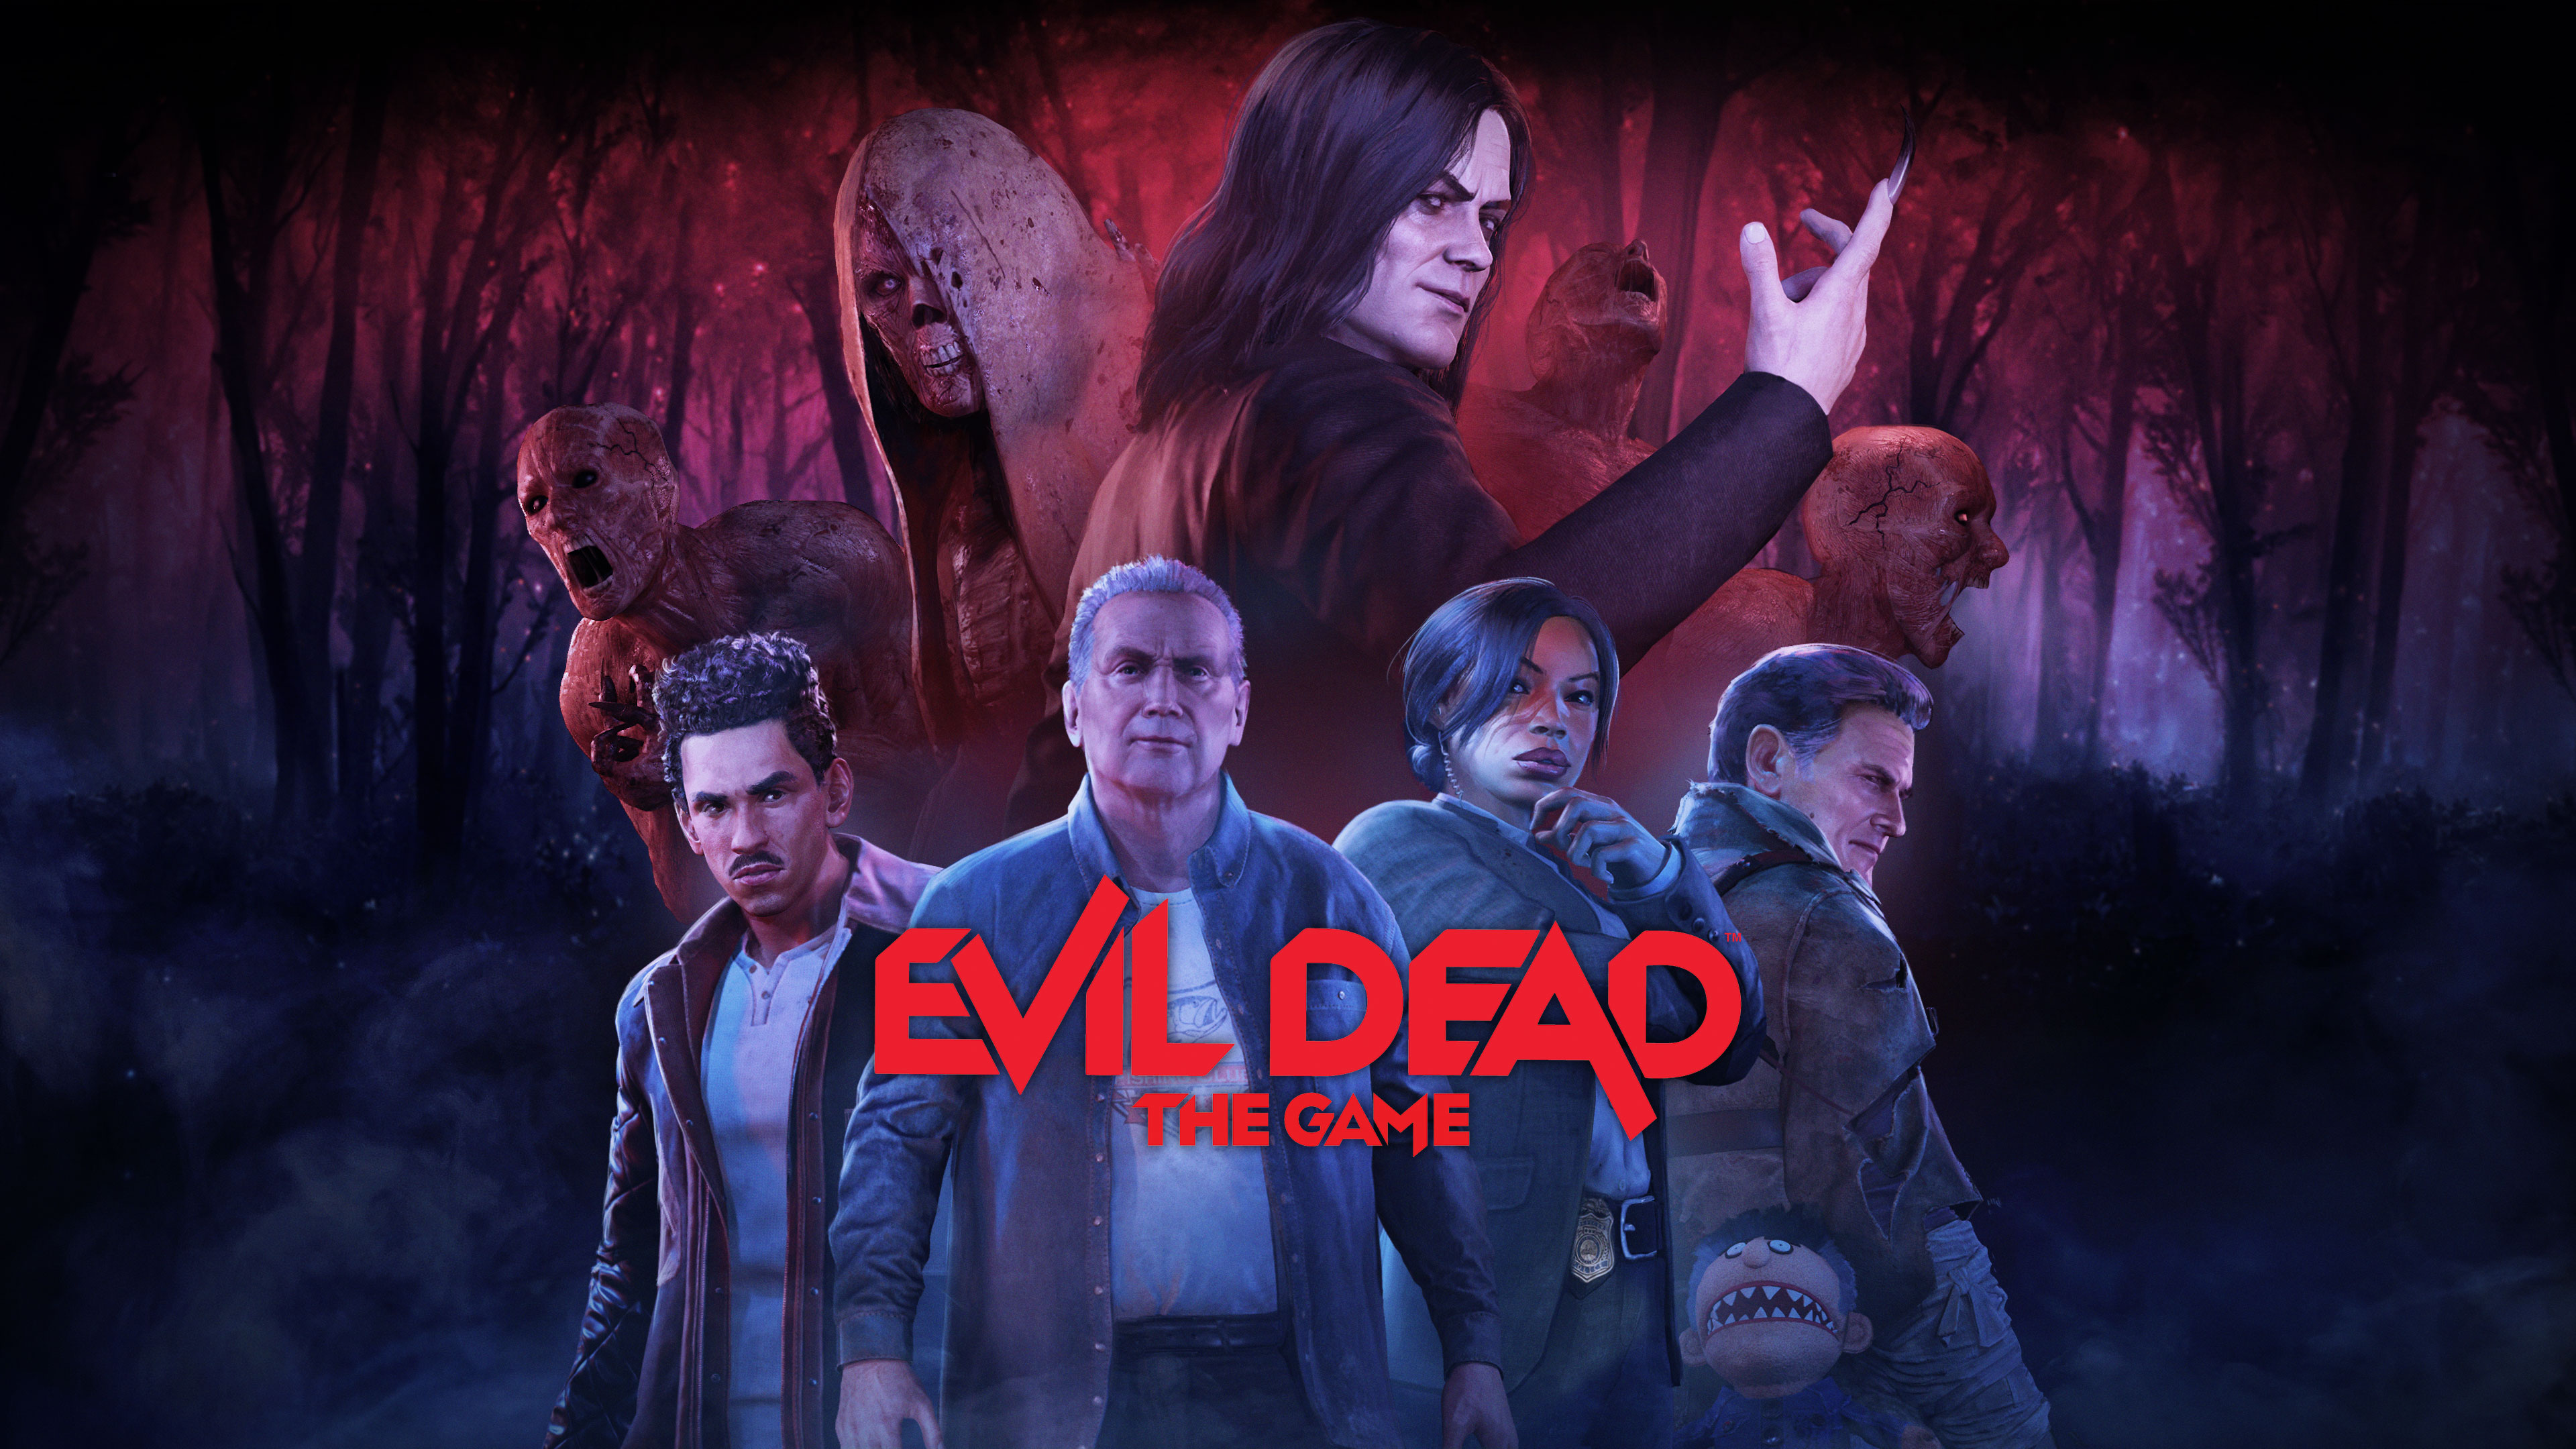 Evil Dead, PC - EPIC Games